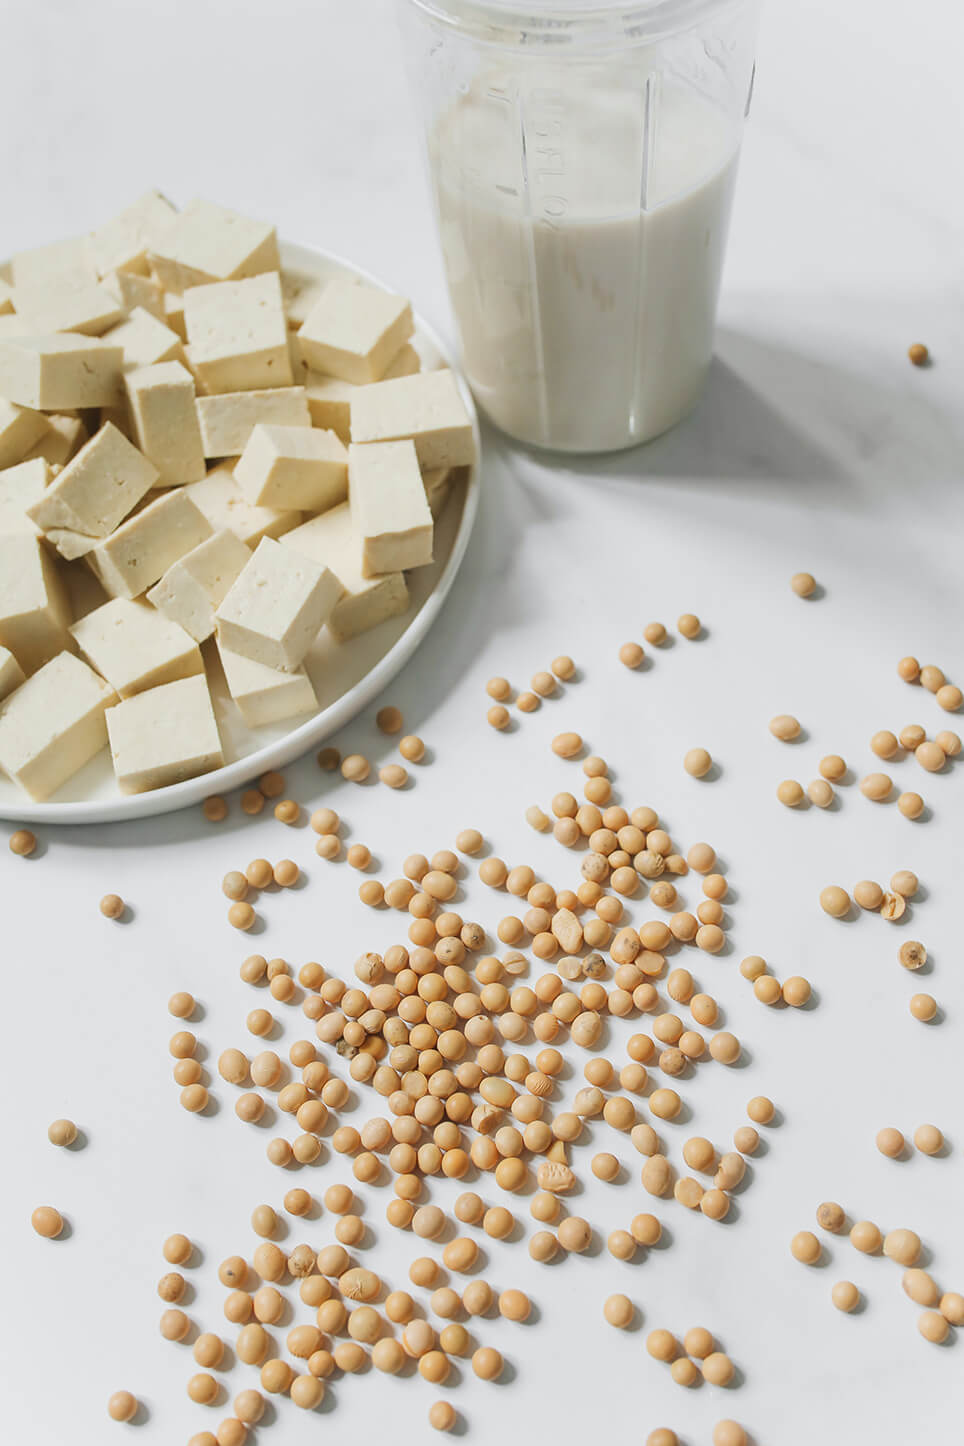 milk soy milk oat milk almond milk 식물성우유 동물성 우유 소이밀크 두유 오트밀크 귀리우유 아몬드 우유 건강 관련